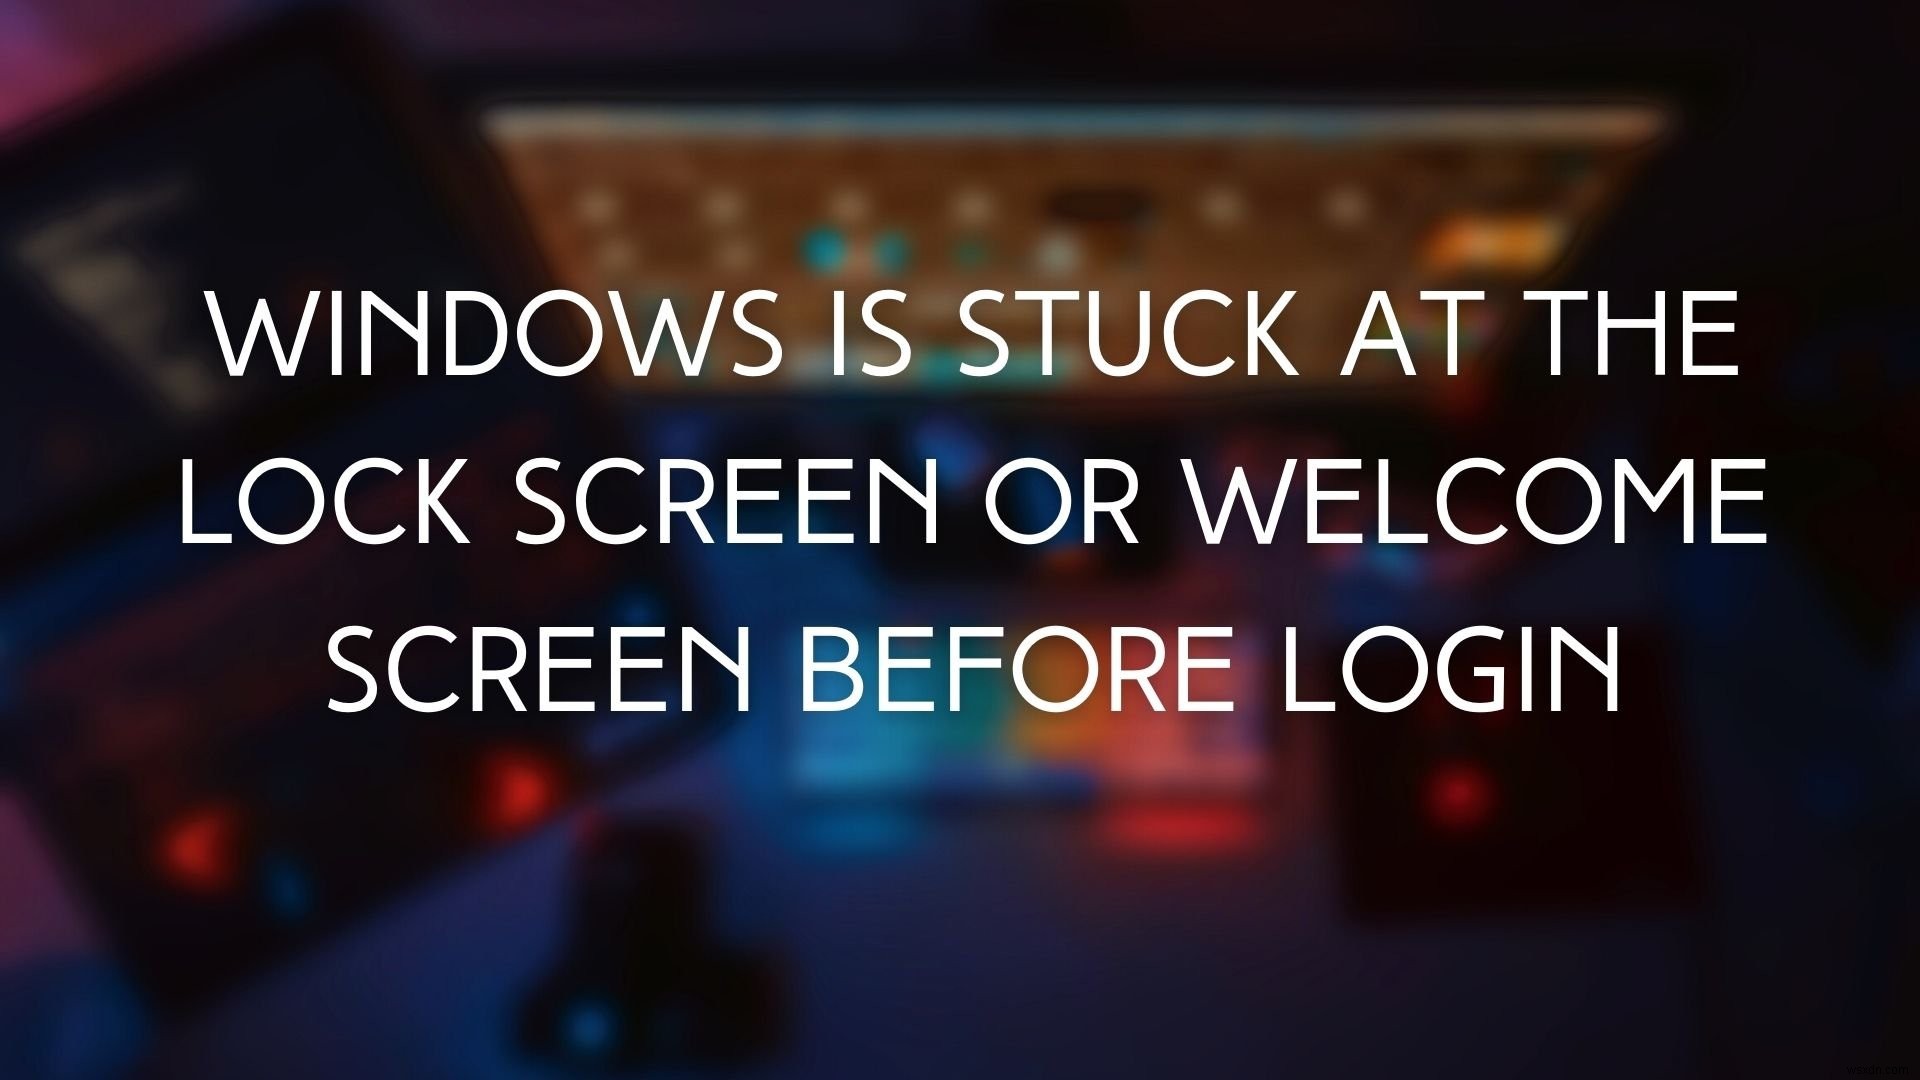 Windows ค้างที่หน้าจอล็อคก่อนเข้าสู่ระบบ 